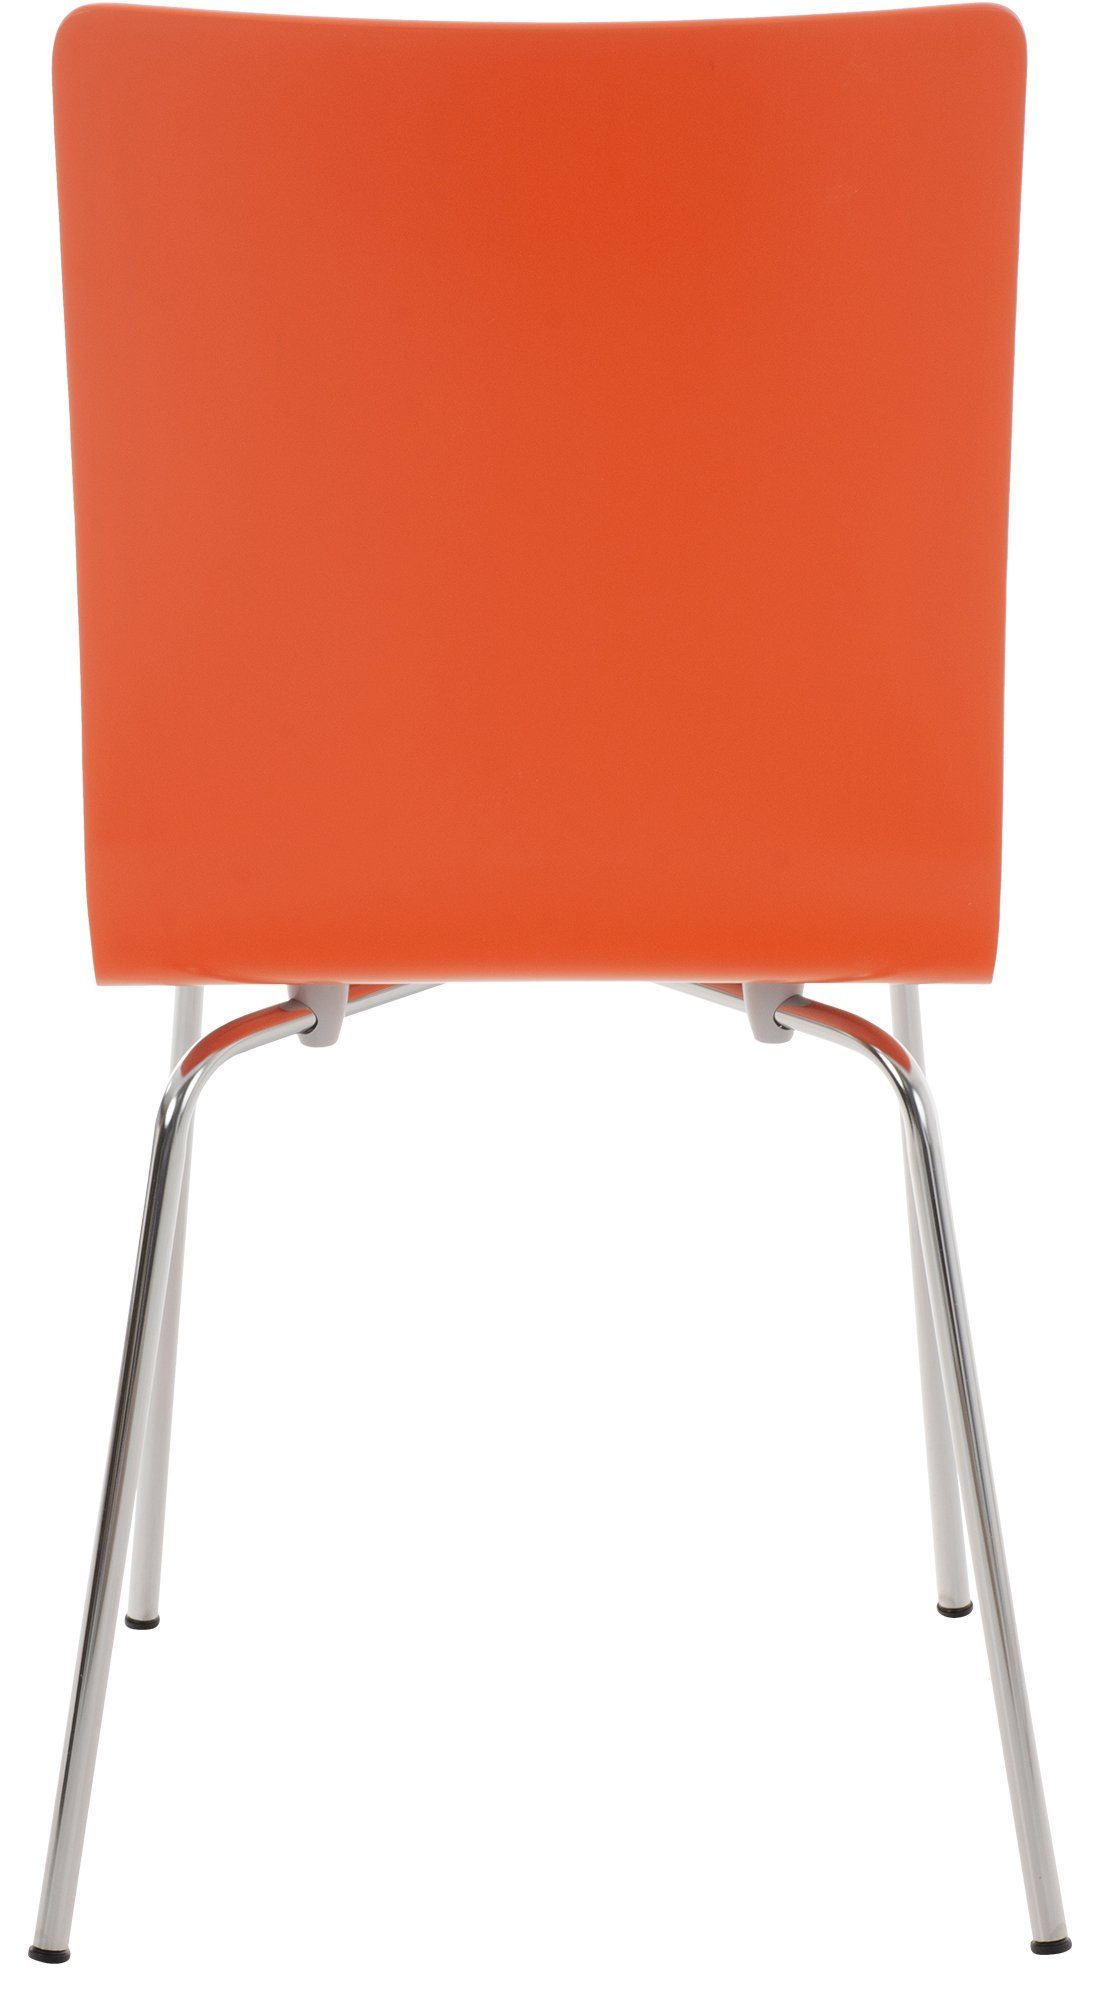 Pepe, & Besucherstuhl CLP orange Metallgestell ergonomisch Holzsitz geformter